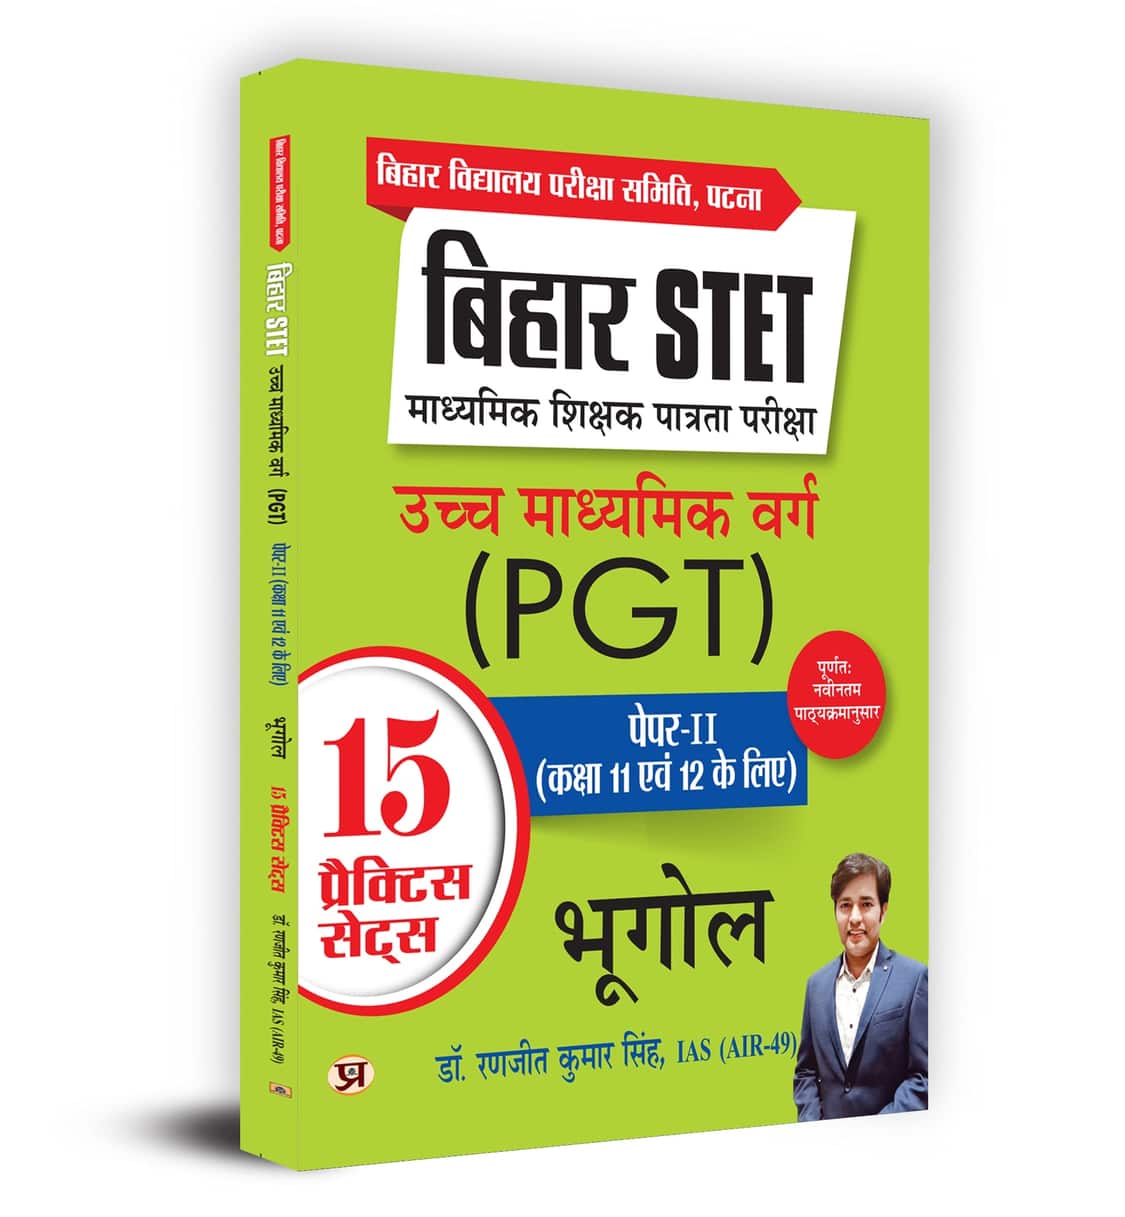 Bihar STET Madhyamik Shikshak Patrata Pariksha Uchch Madhyamik Varg Bhugol (PGT) Paper-2 (Class 11 & 12) Geography 15 Practice Sets